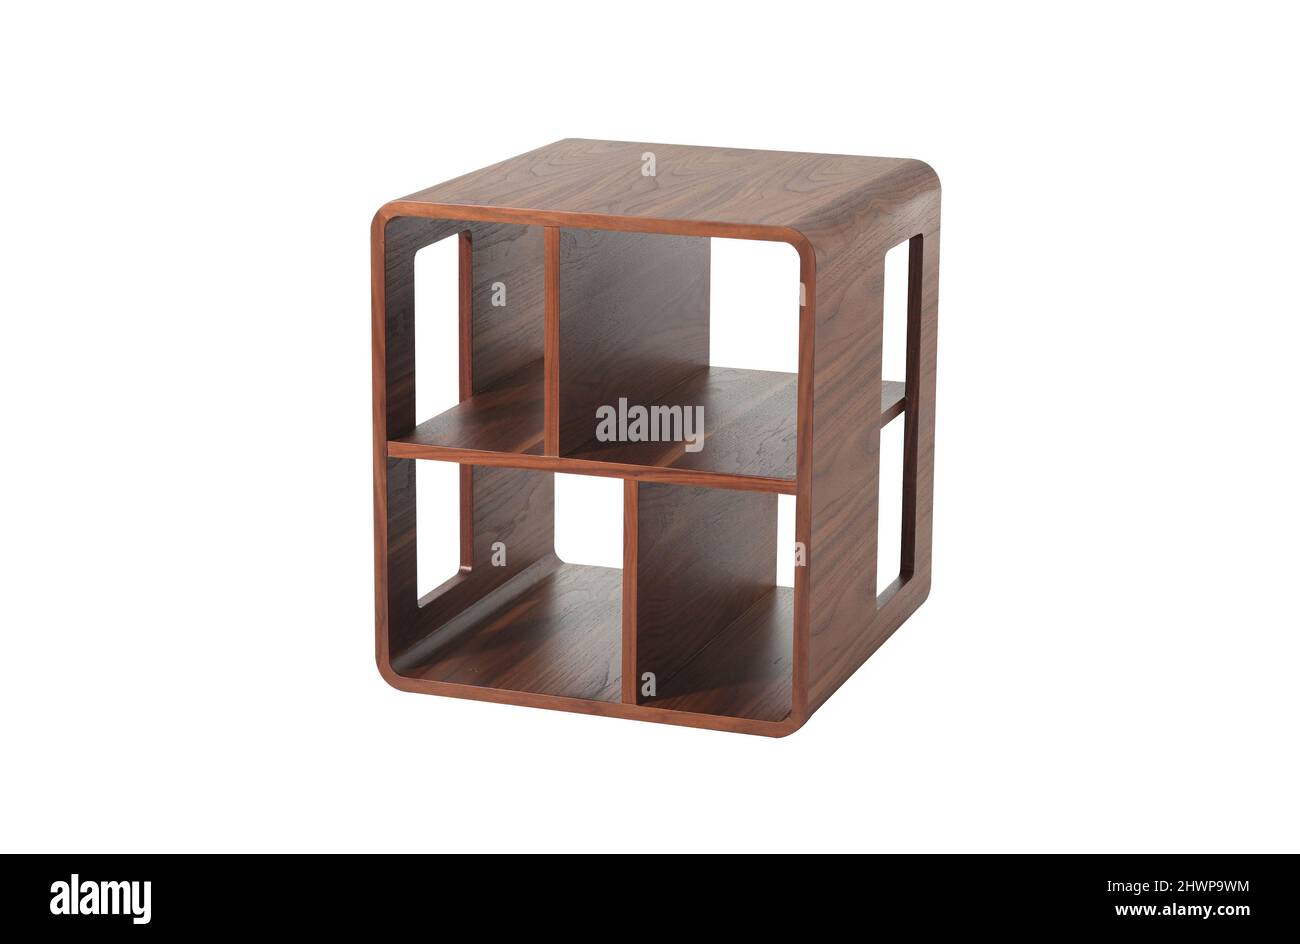 Moderna mesa de madera de forma cuadrada con elementos de almacenamiento Foto de stock